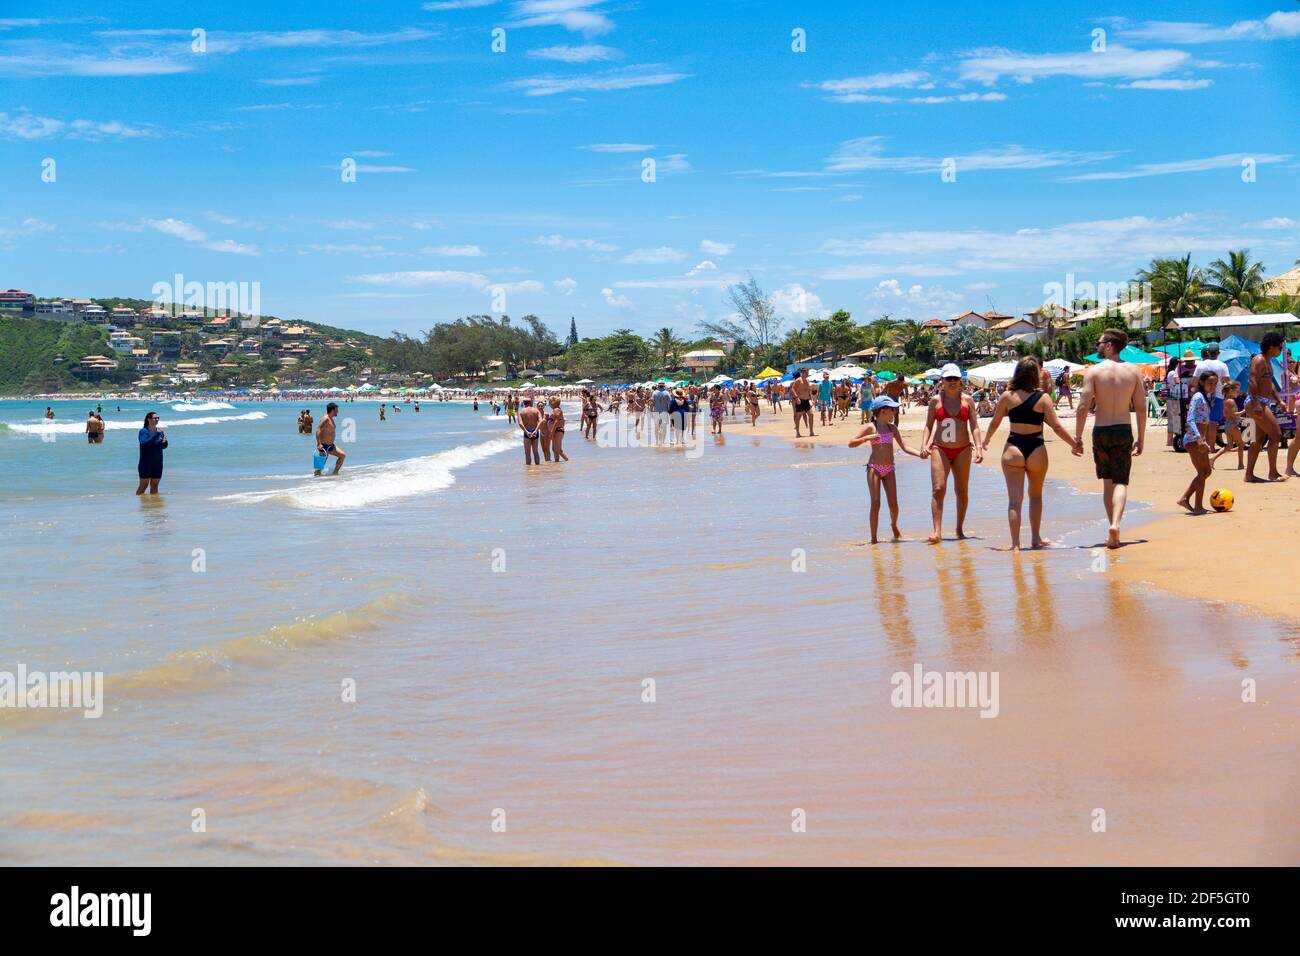 Buzios, Rio de Janeiro, Brasile – 22 dicembre 2019: Praia da Geriba, Vista panoramica di questa bellissima spiaggia. Le persone che camminano sulla spiaggia. Foto Stock